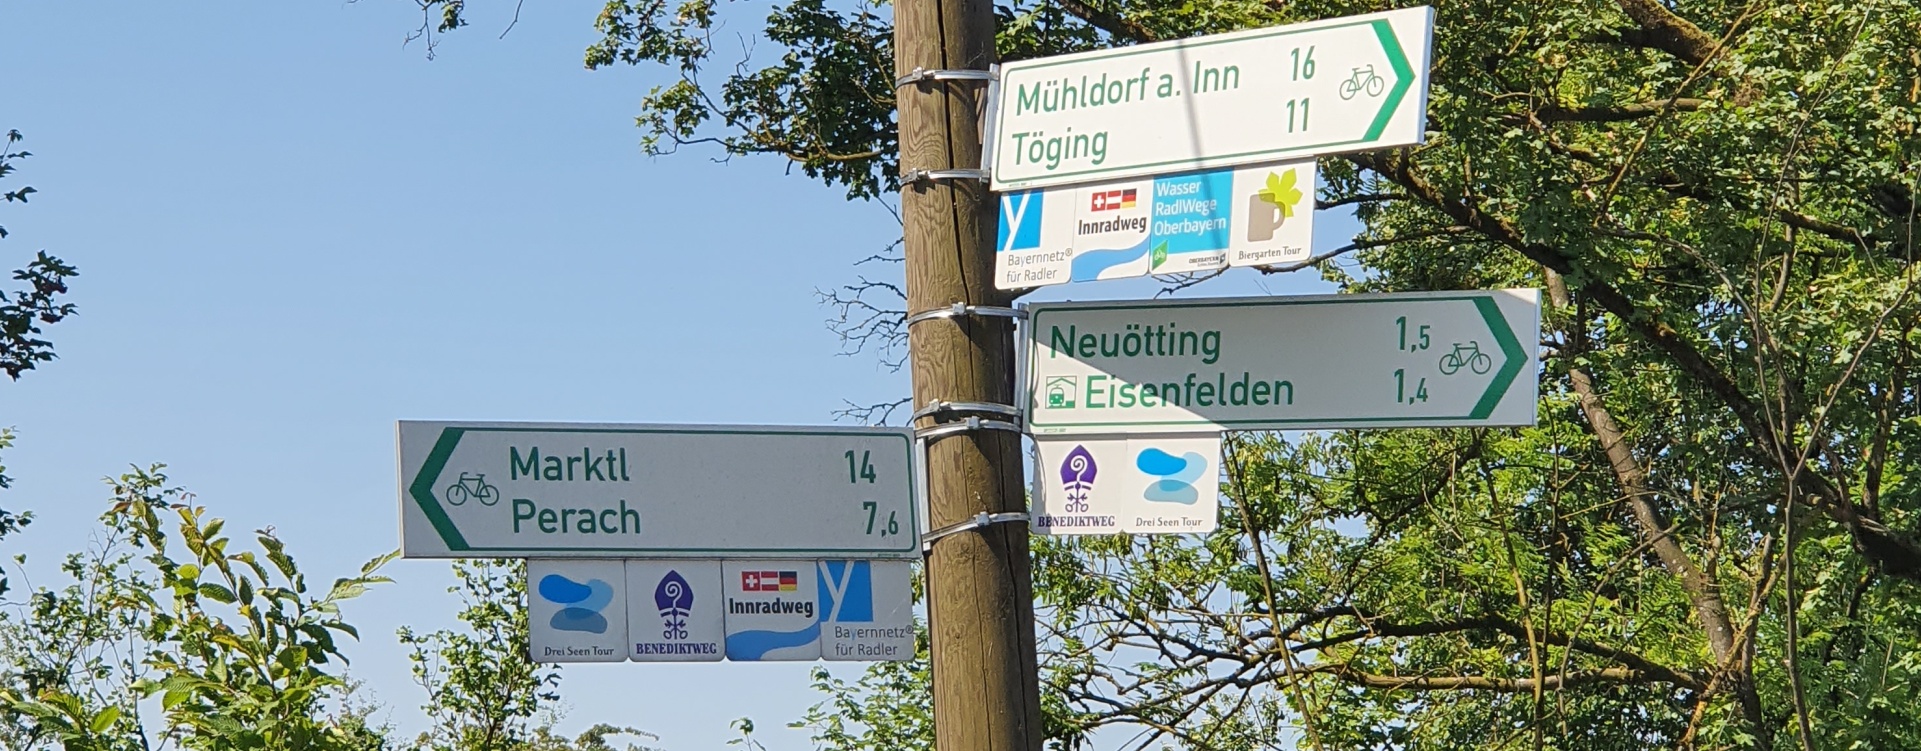 Wegweiser des Radwegnetzes Inn-Salzach an der Innbrücke in Neuötting